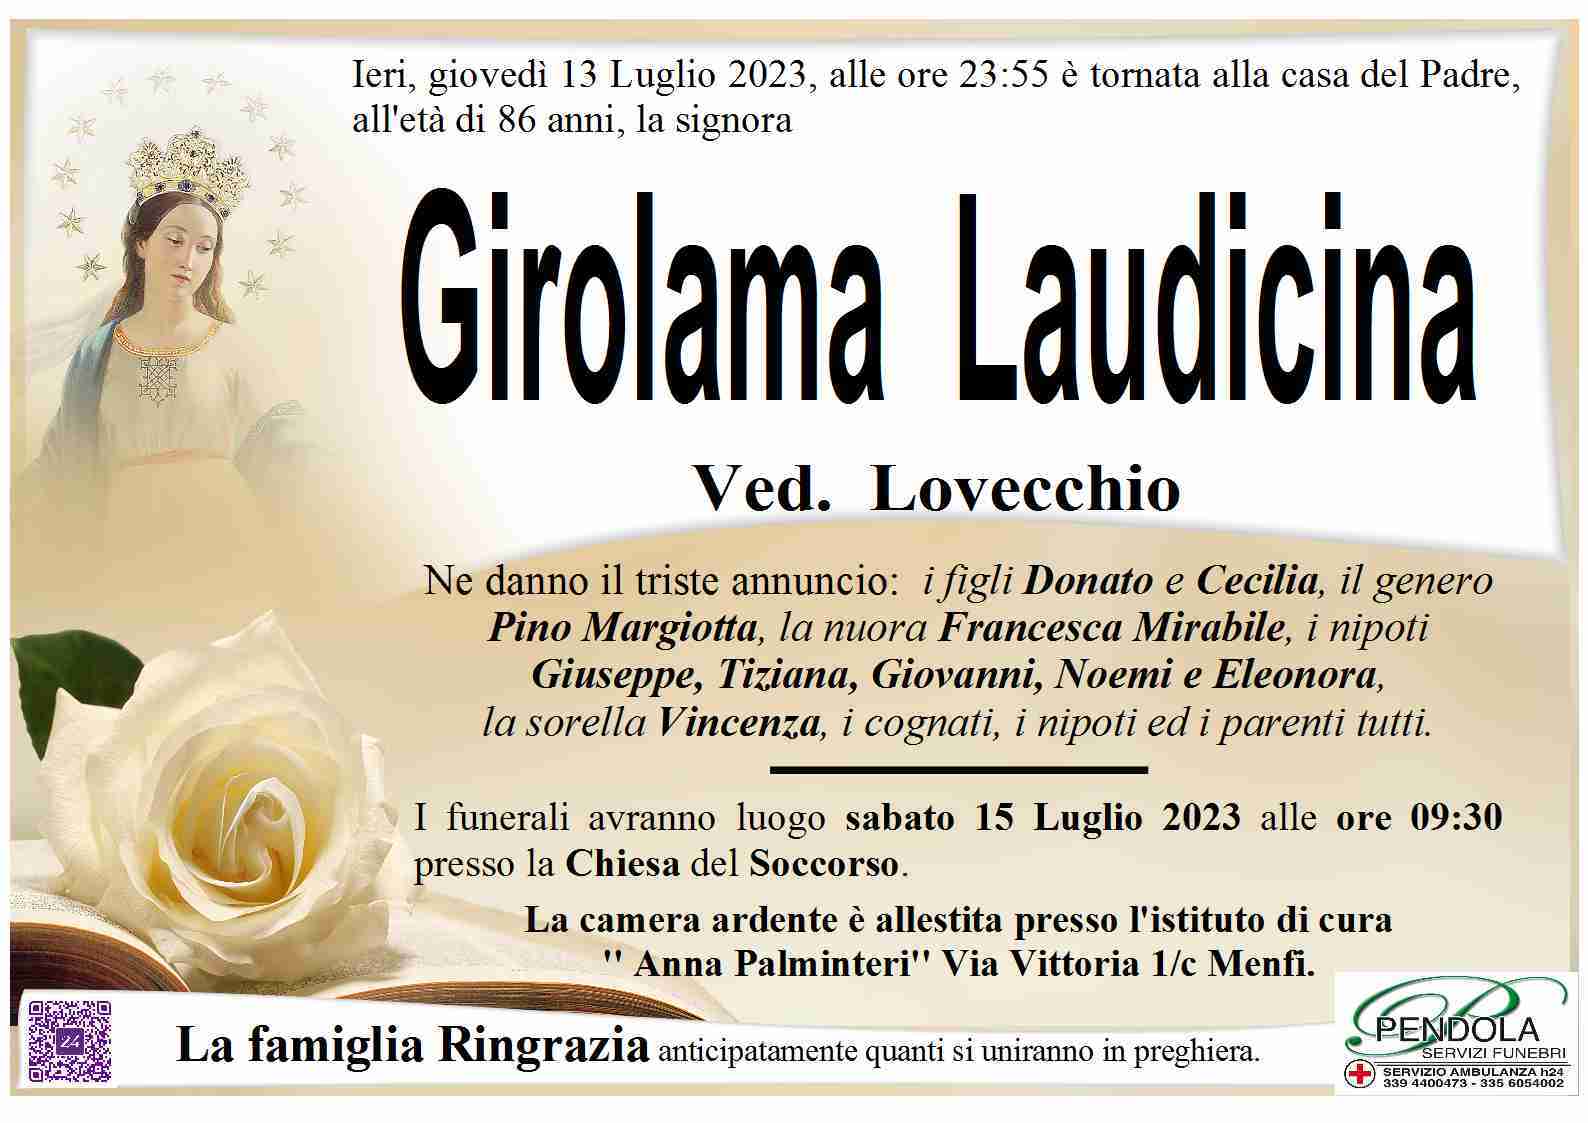 Laudicina Girolama